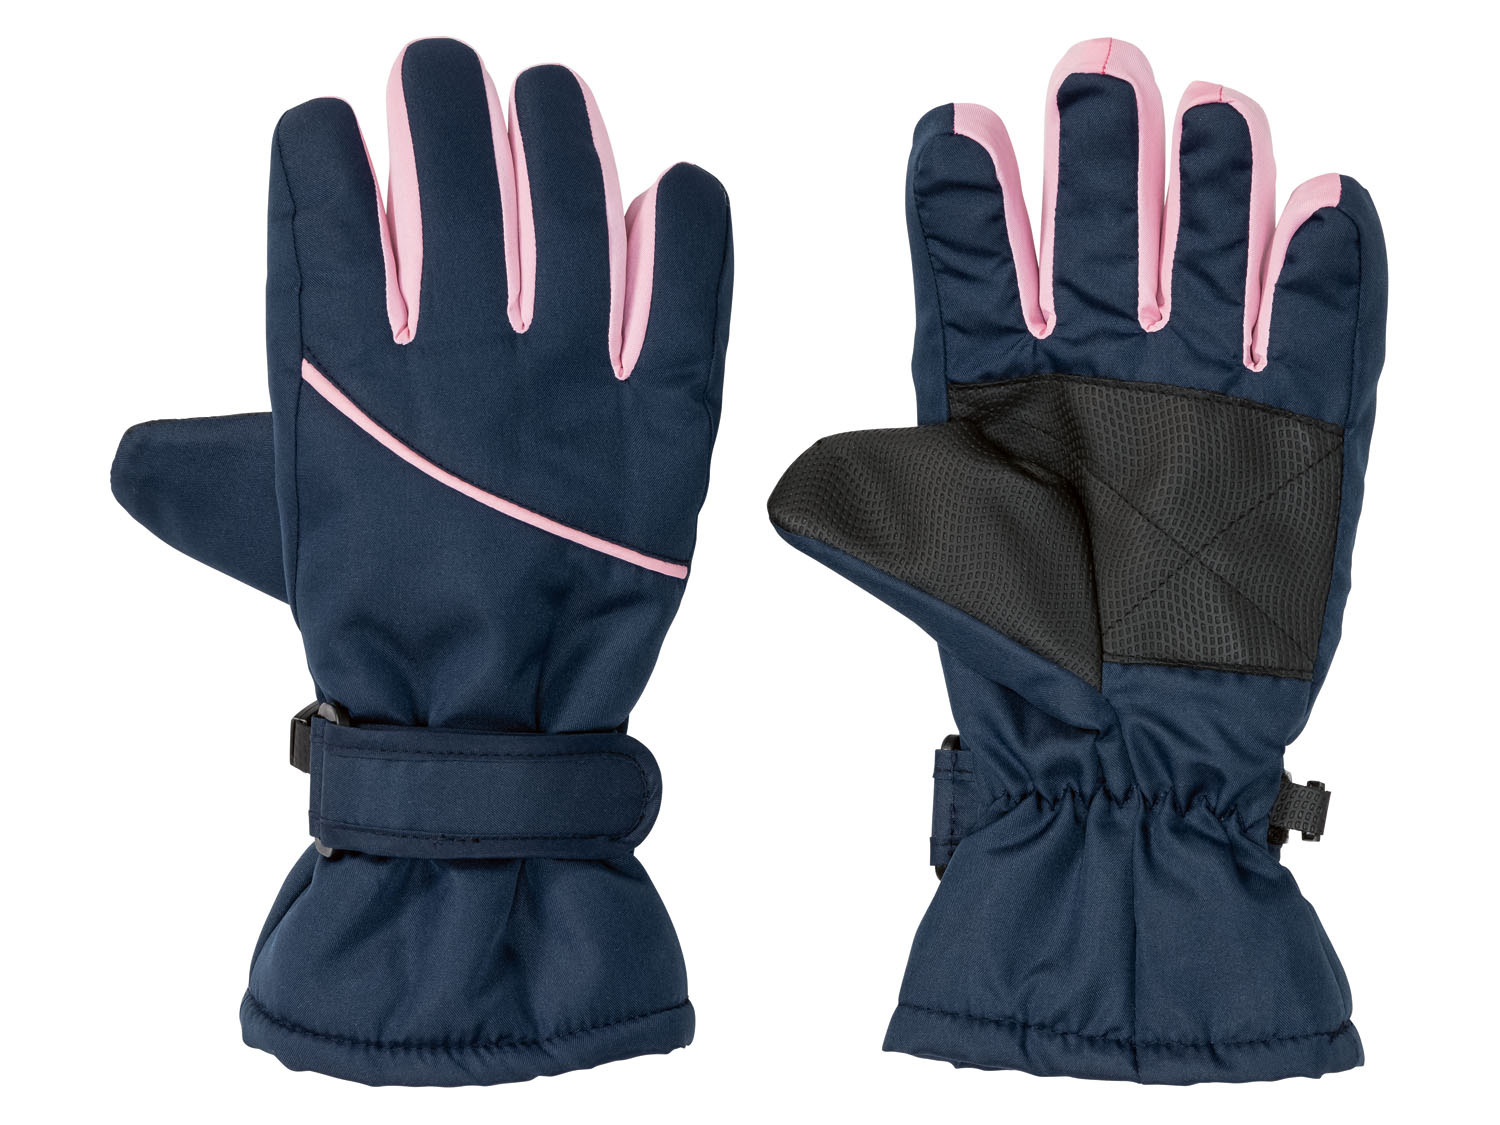 QKURT 6 Paar Kinder Anti-Rutsch-Handschuhe Winterwarme Stretchhandschuhe Unisex Stretchhandschuhe Vollfingerhandschuhe Winterhandschuhe für Jungen und Mädchen im Alter von 5 bis 8 Jahren